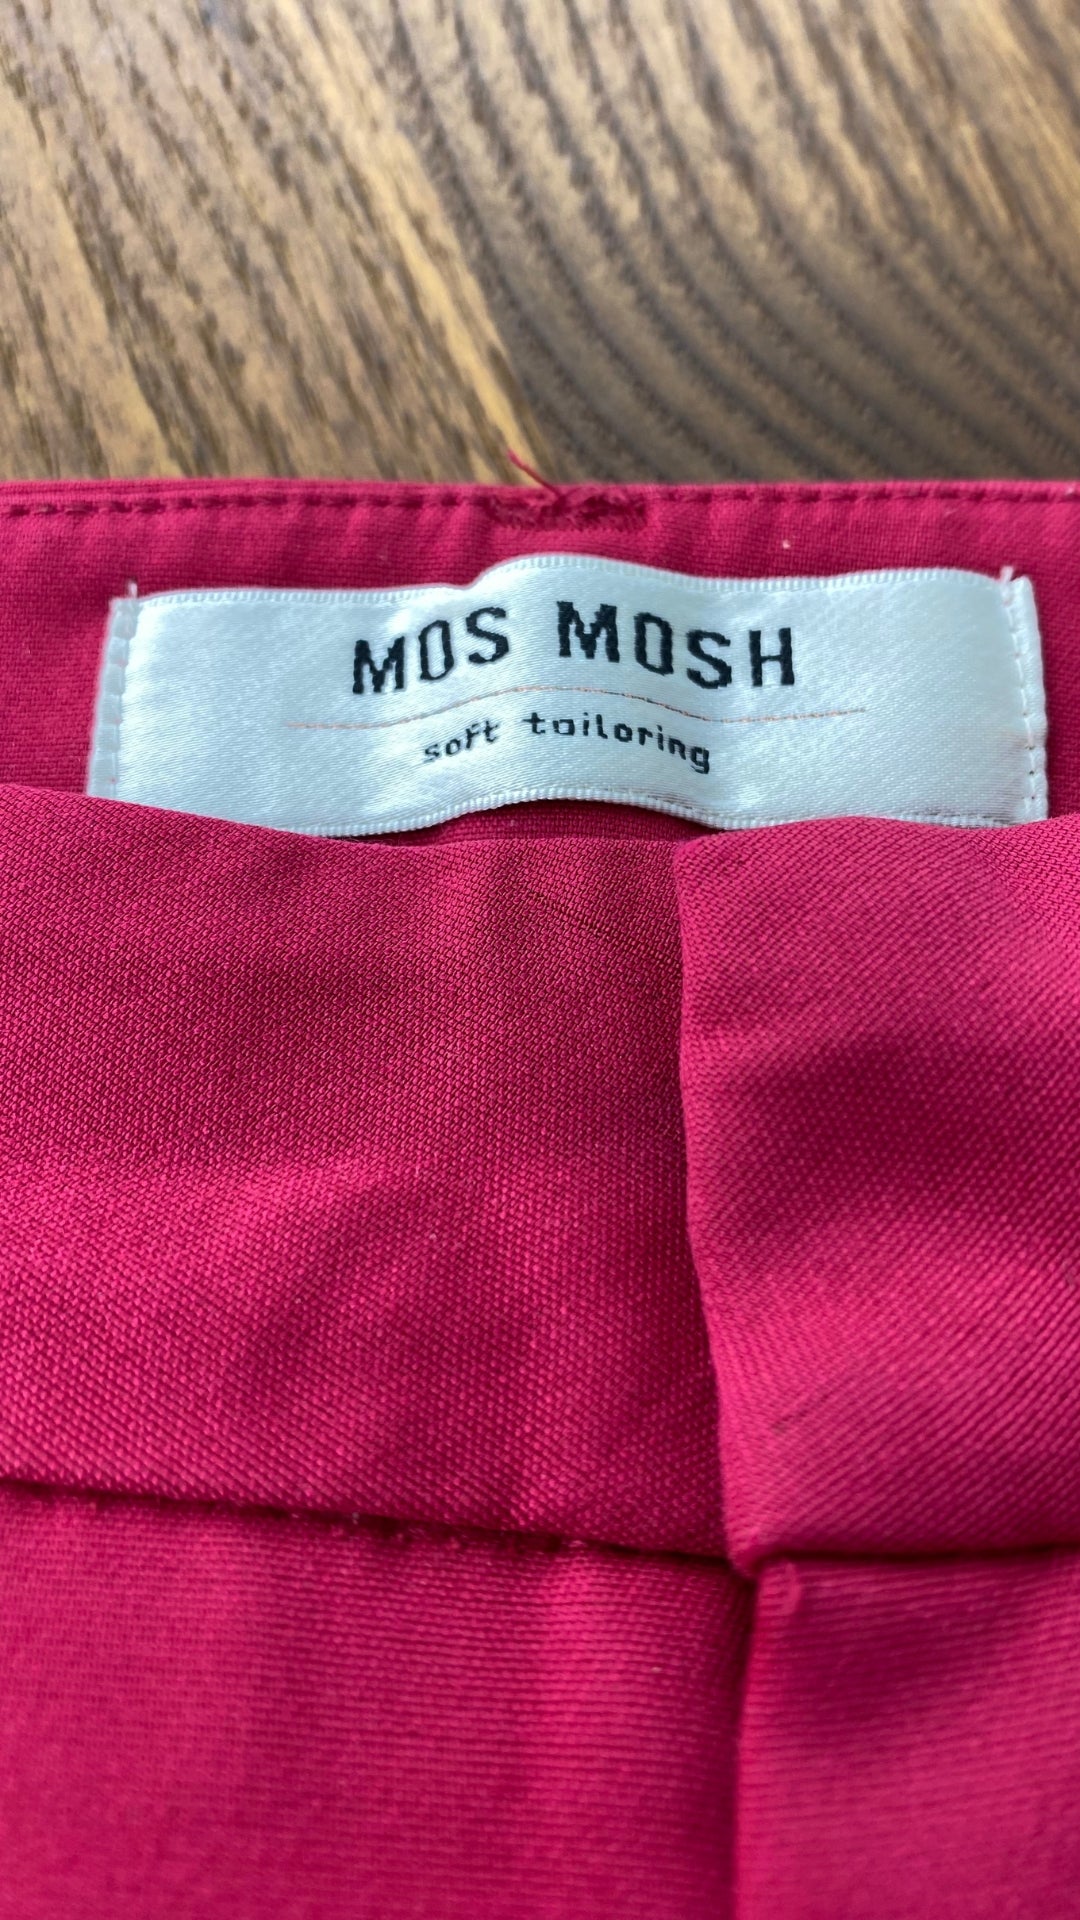 Pantalon écourté rose cerise Mos Mosh, taille 34 (européen - 25-xs). Vue de l'étiquette de marque.